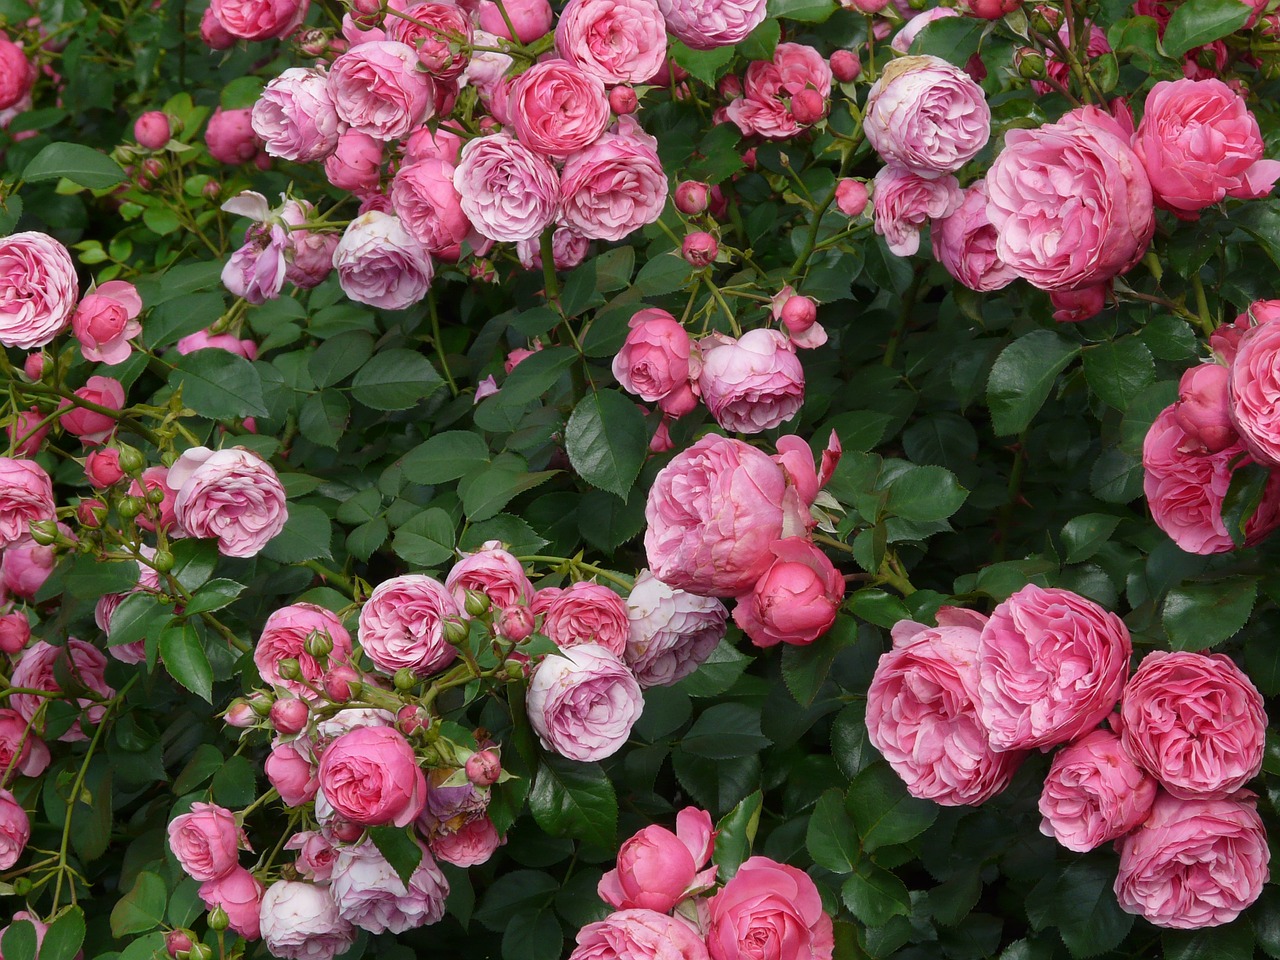 alte rosentapete,blume,blühende pflanze,gartenrosen,rose,floribunda